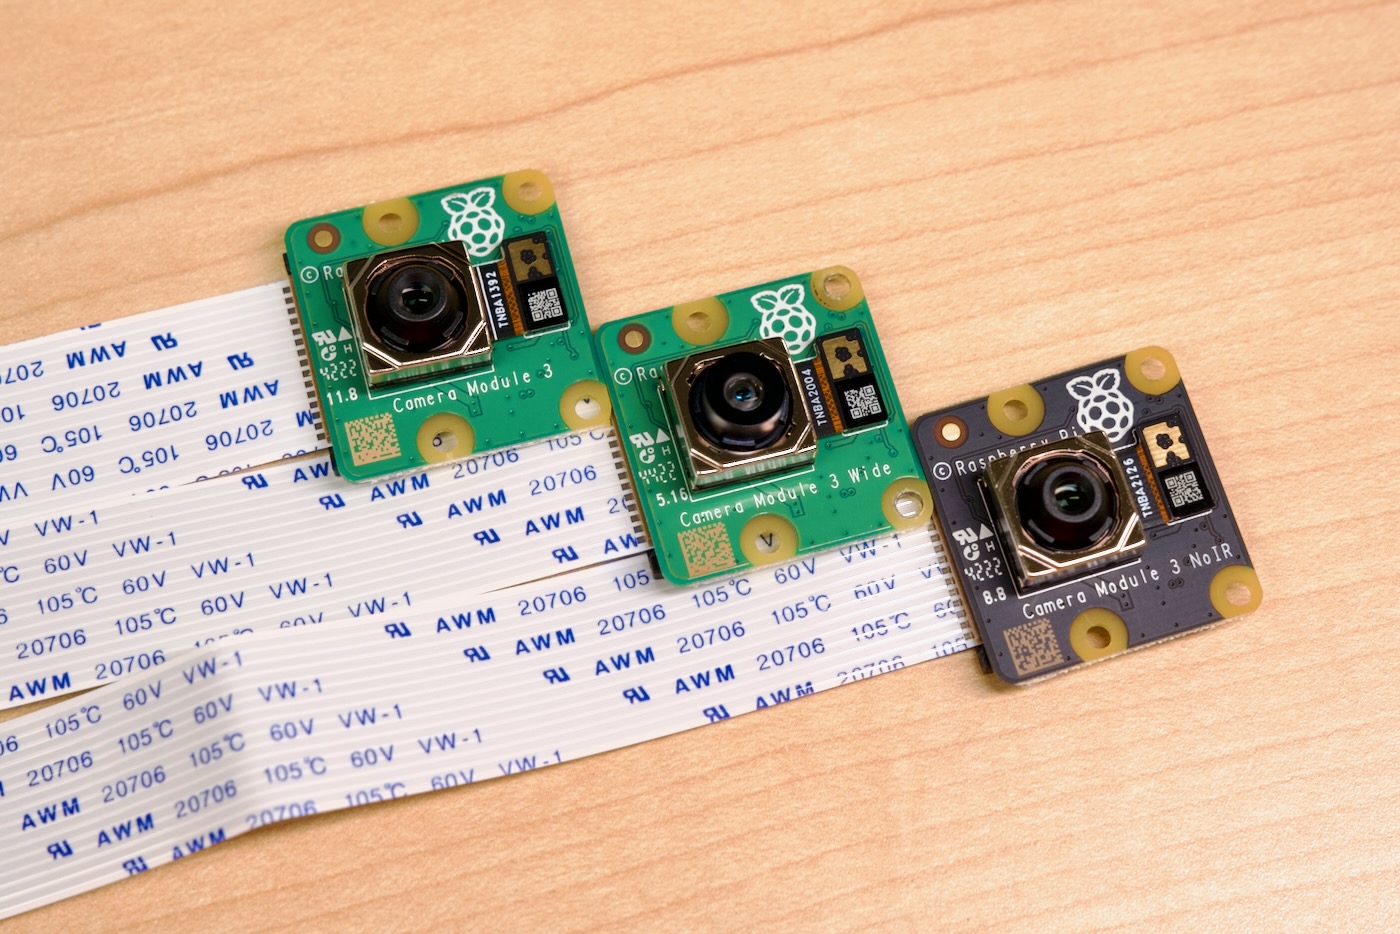 Raspberry Pi Camera Module 3 varieties - standard, wide, and NoIR